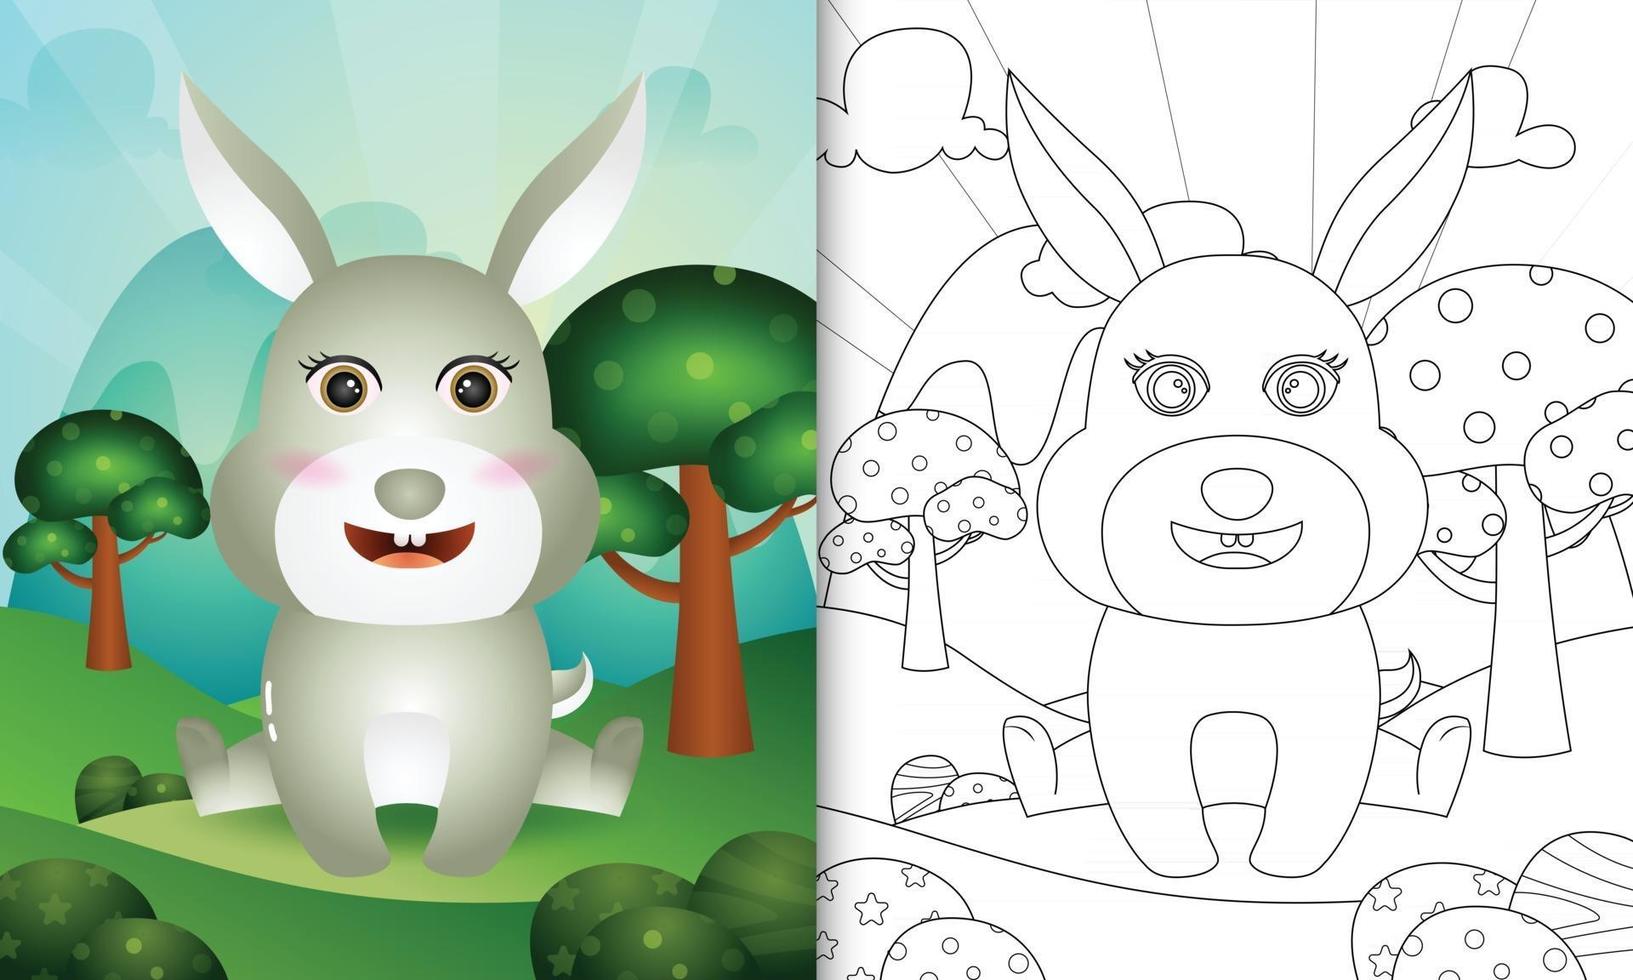 målarbok för barn med en söt kaninkaraktärsillustration vektor